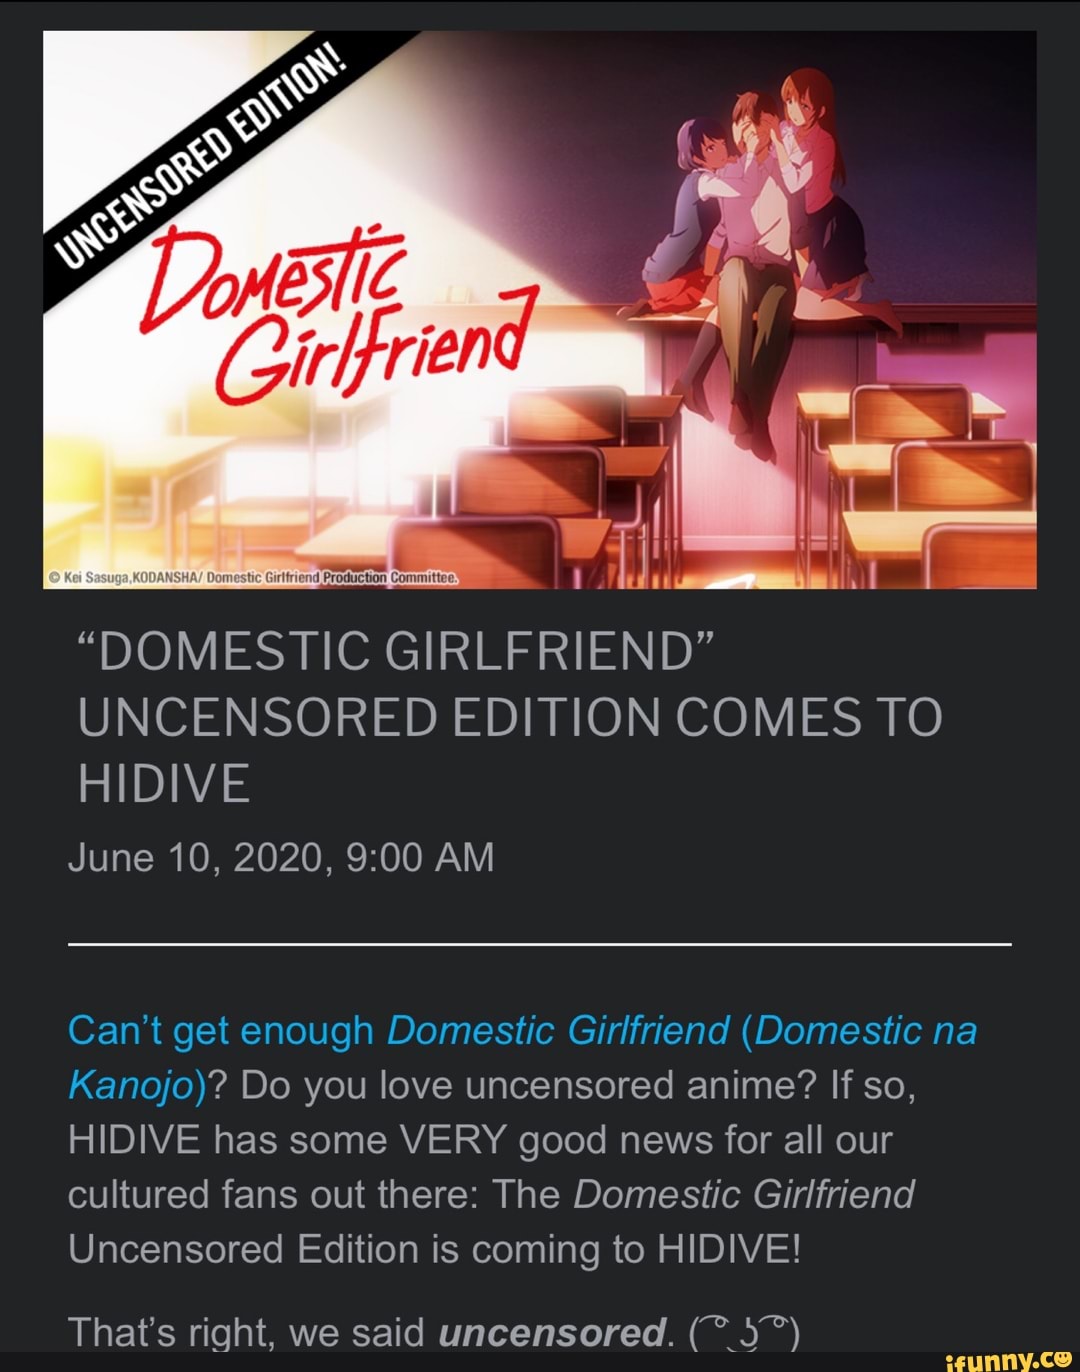 Domestic Girlfriend to Stream Uncensored Season on HIDIVE